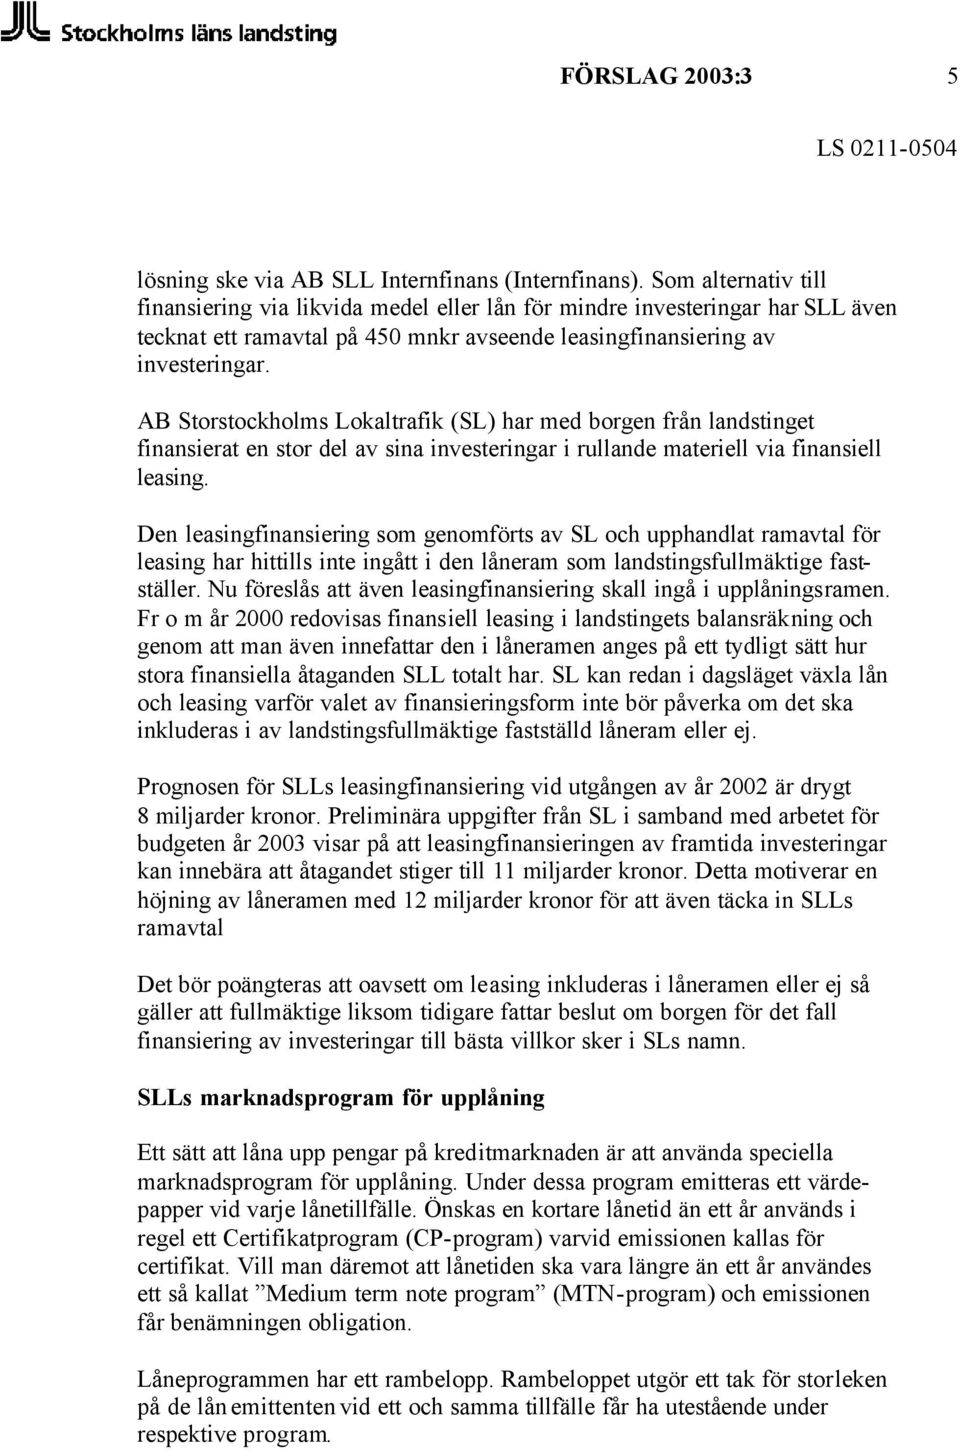 AB Storstockholms Lokaltrafik (SL) har med borgen från landstinget finansierat en stor del av sina investeringar i rullande materiell via finansiell leasing.